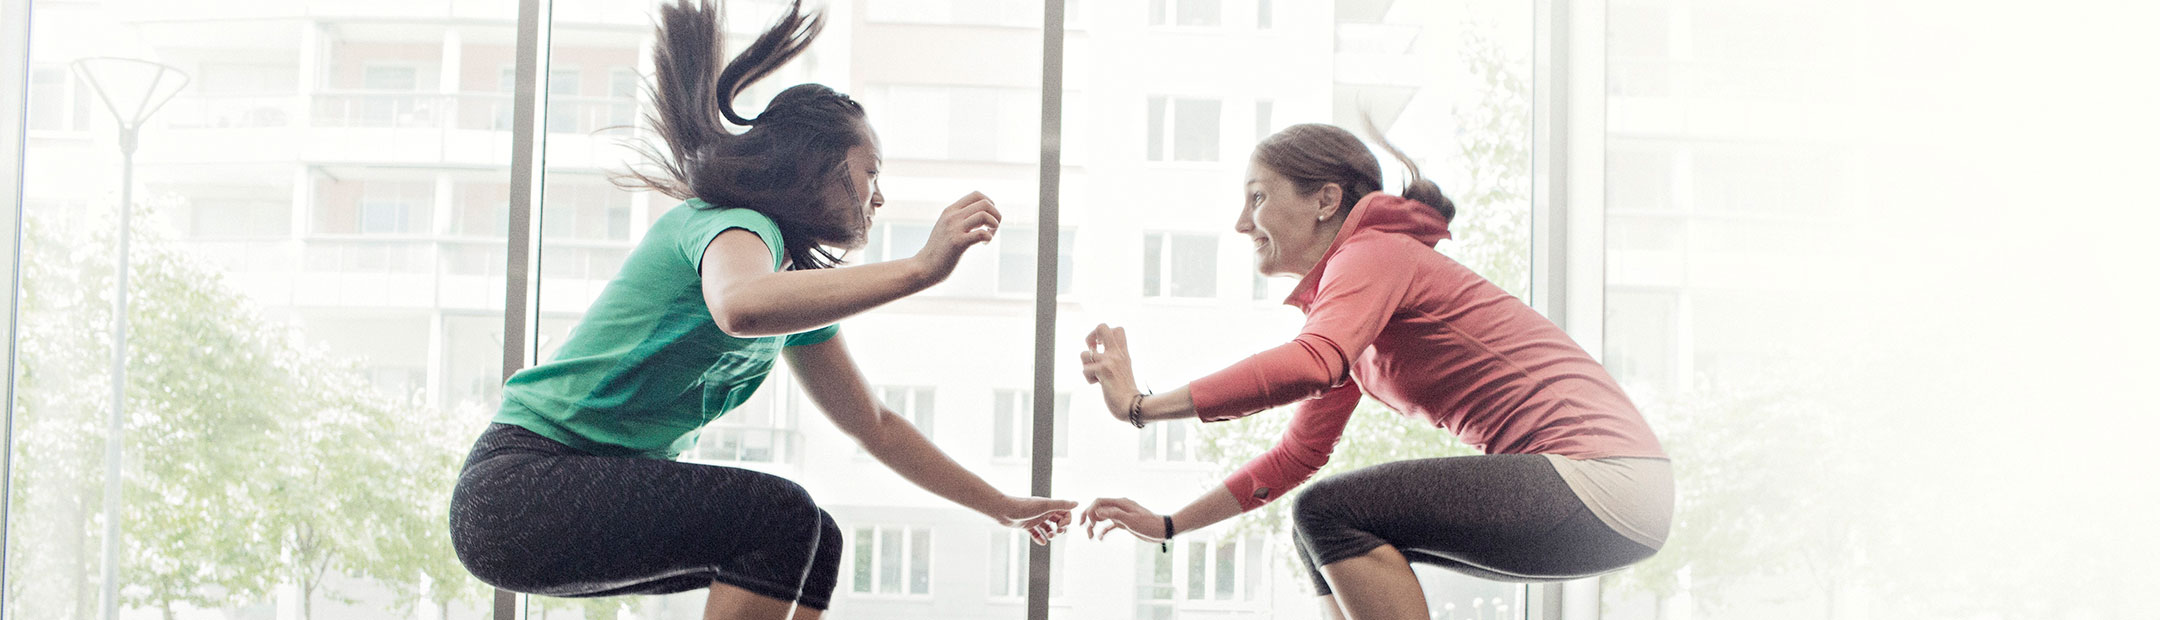 Två träningsklädda kvinnor hoppar upp mittemot varandra.